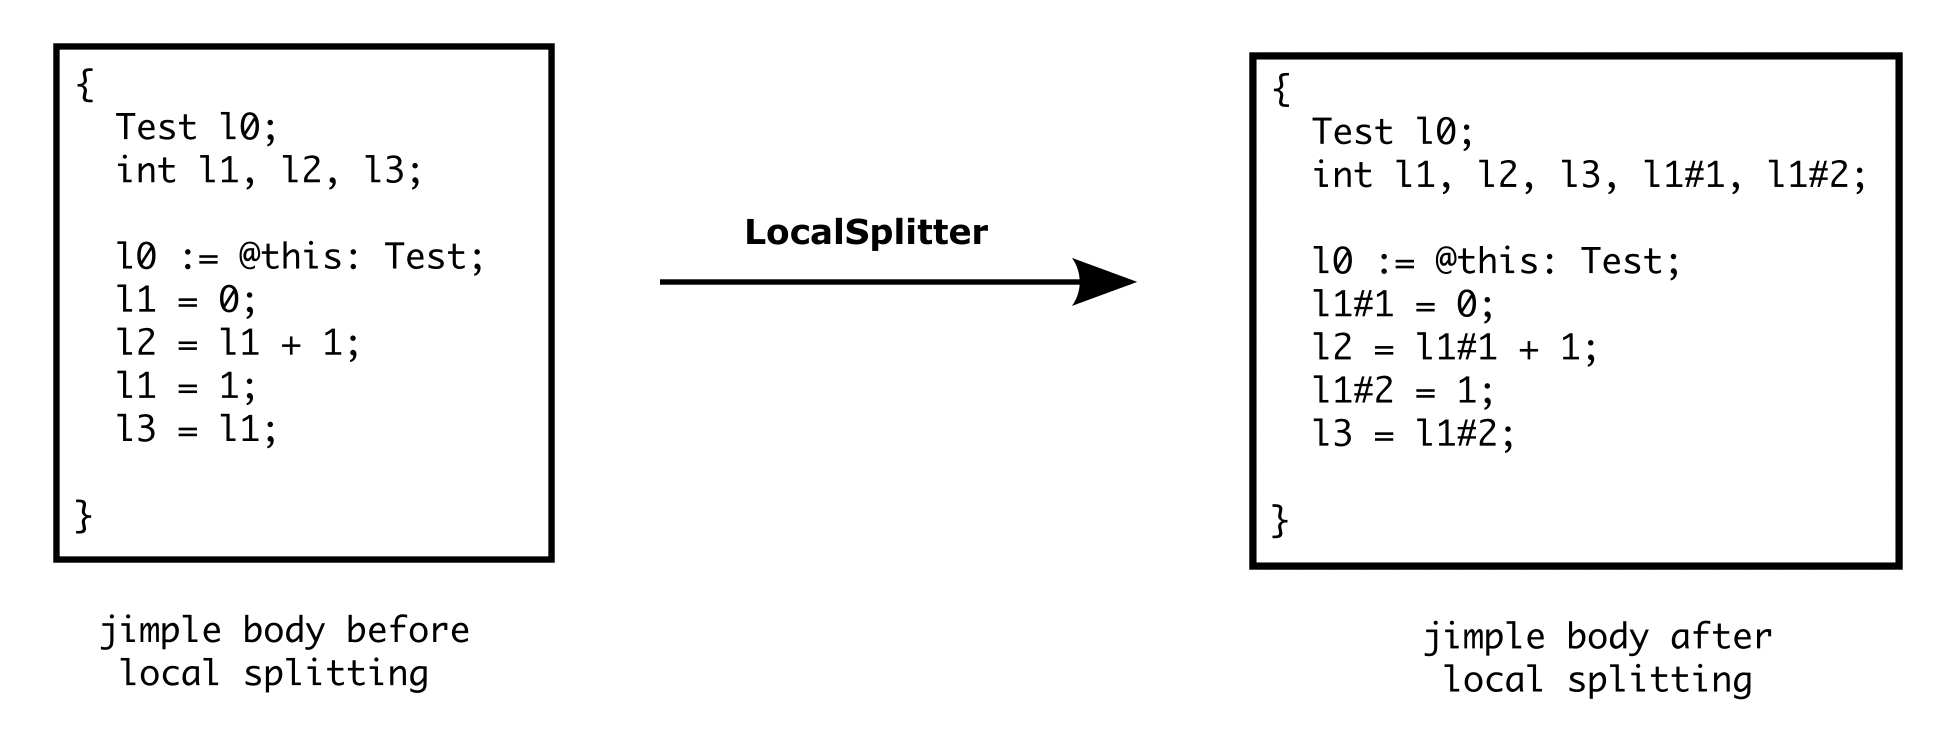 LocalSplitter Example_1